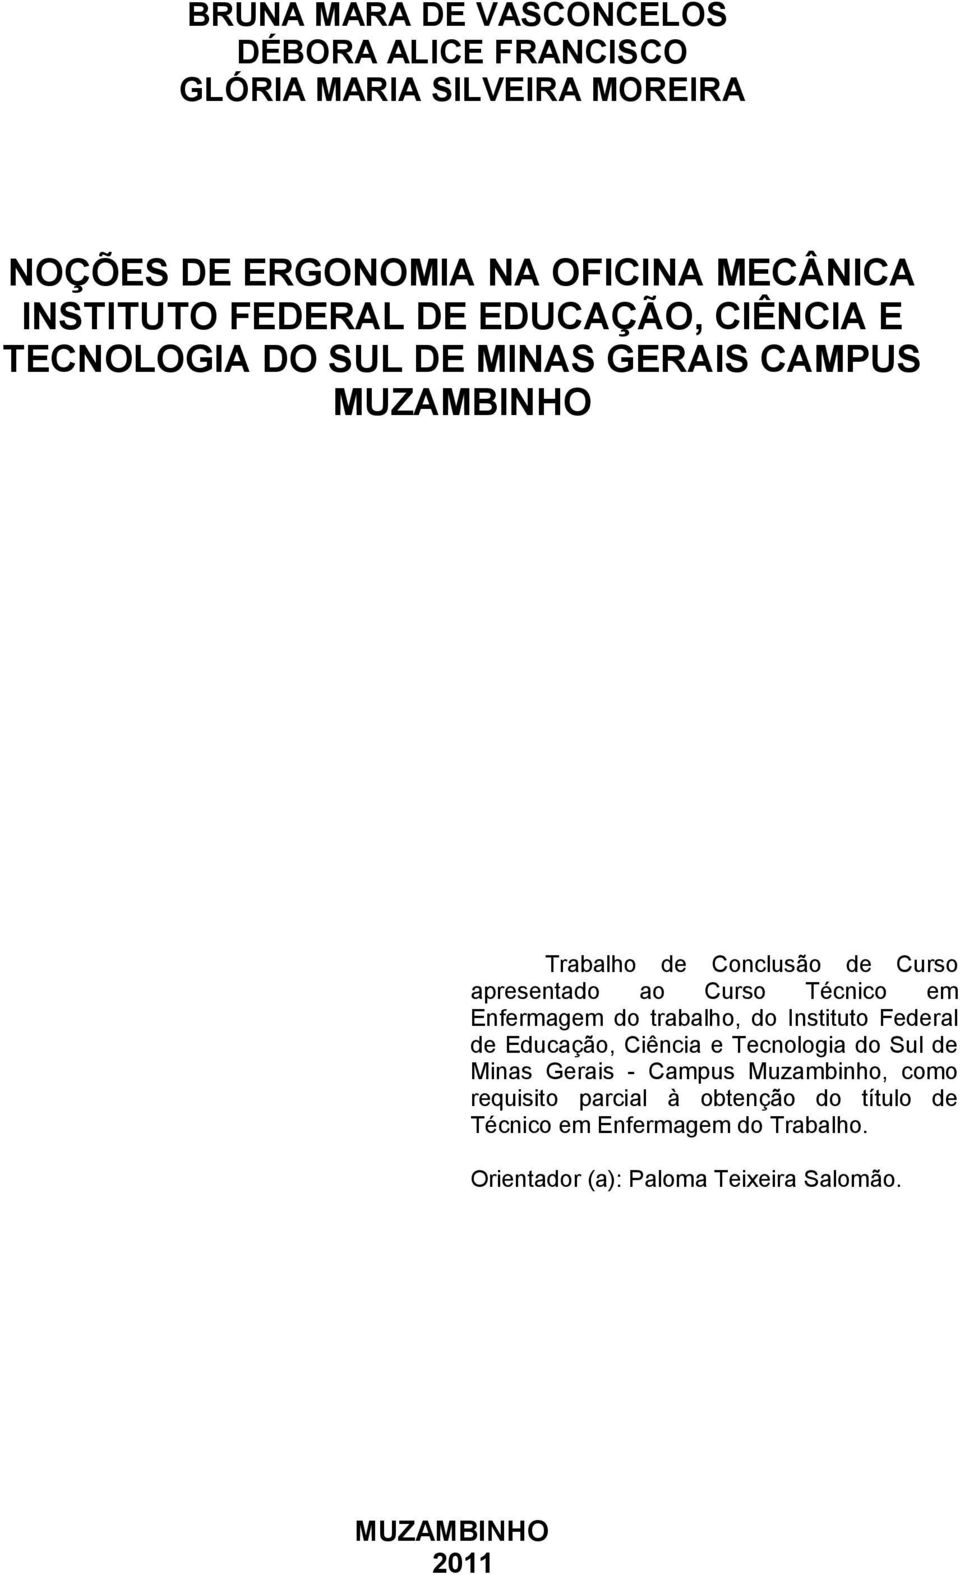 Curso Técnico em Enfermagem do trabalho, do Instituto Federal de Educação, Ciência e Tecnologia do Sul de Minas Gerais - Campus